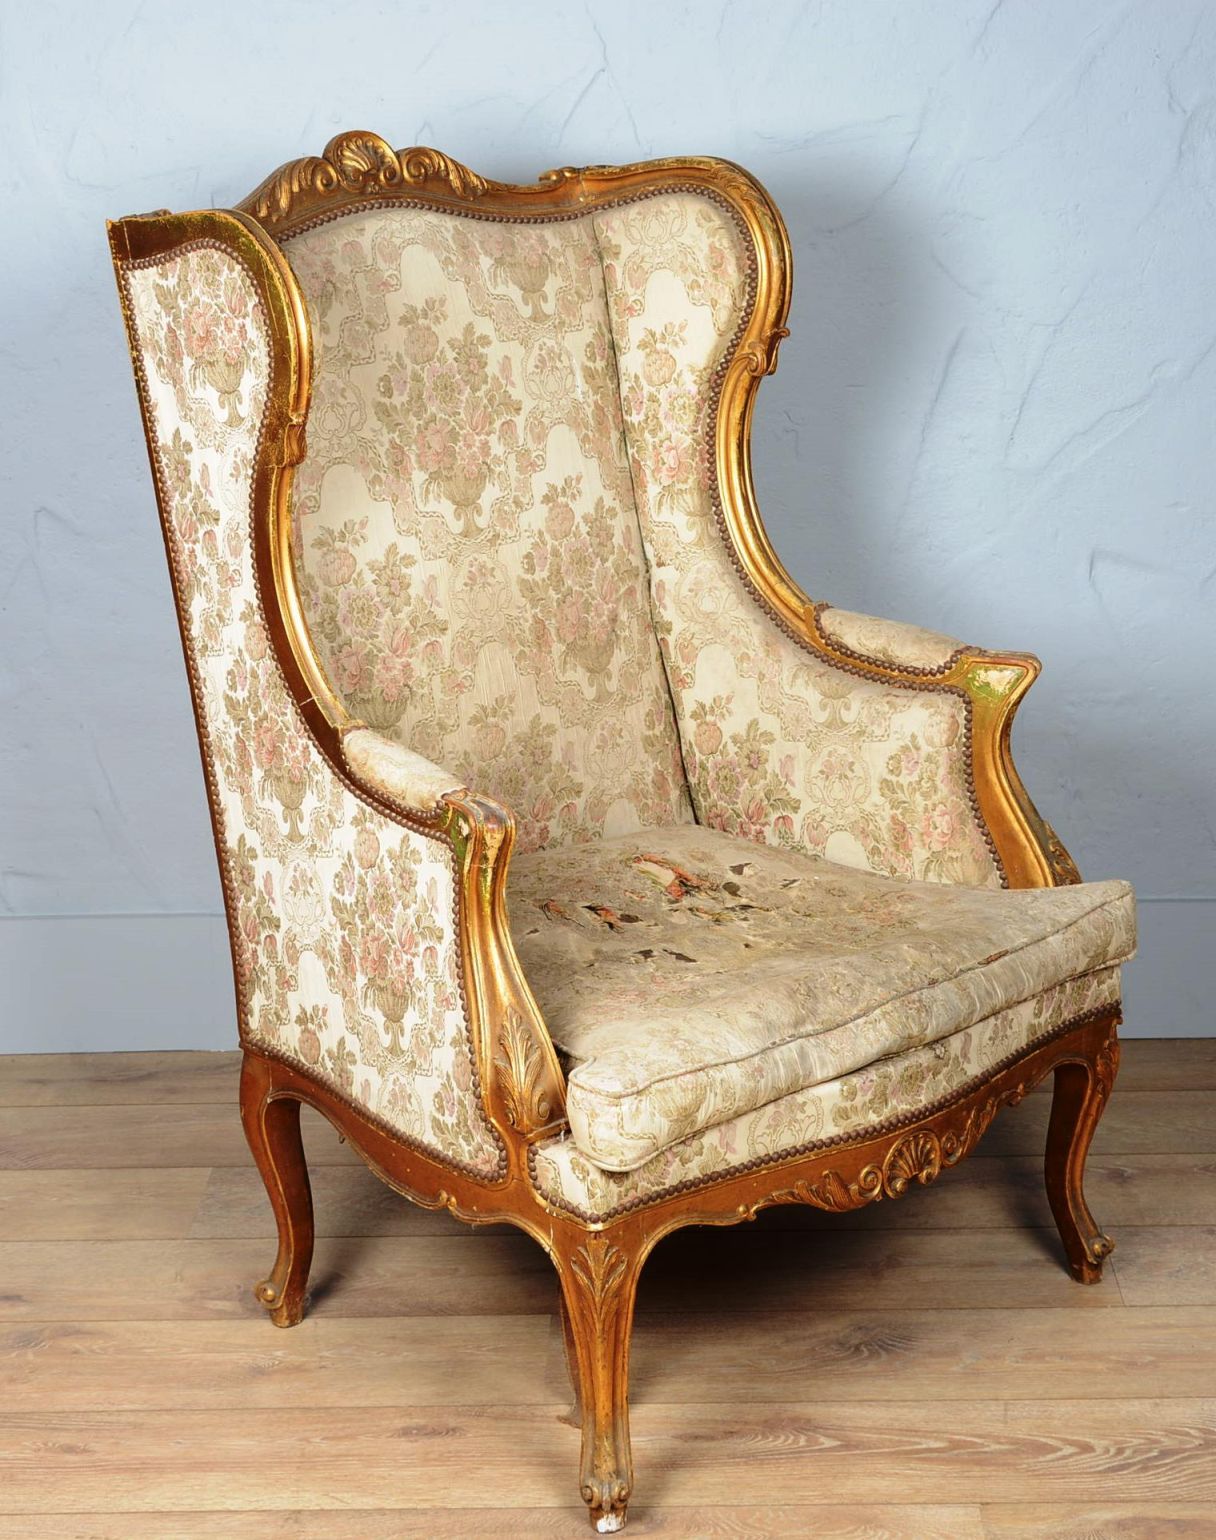 Grand fauteuil à oreilles Gran sillón de madera tallada y dorada con orejas.

Es&hellip;